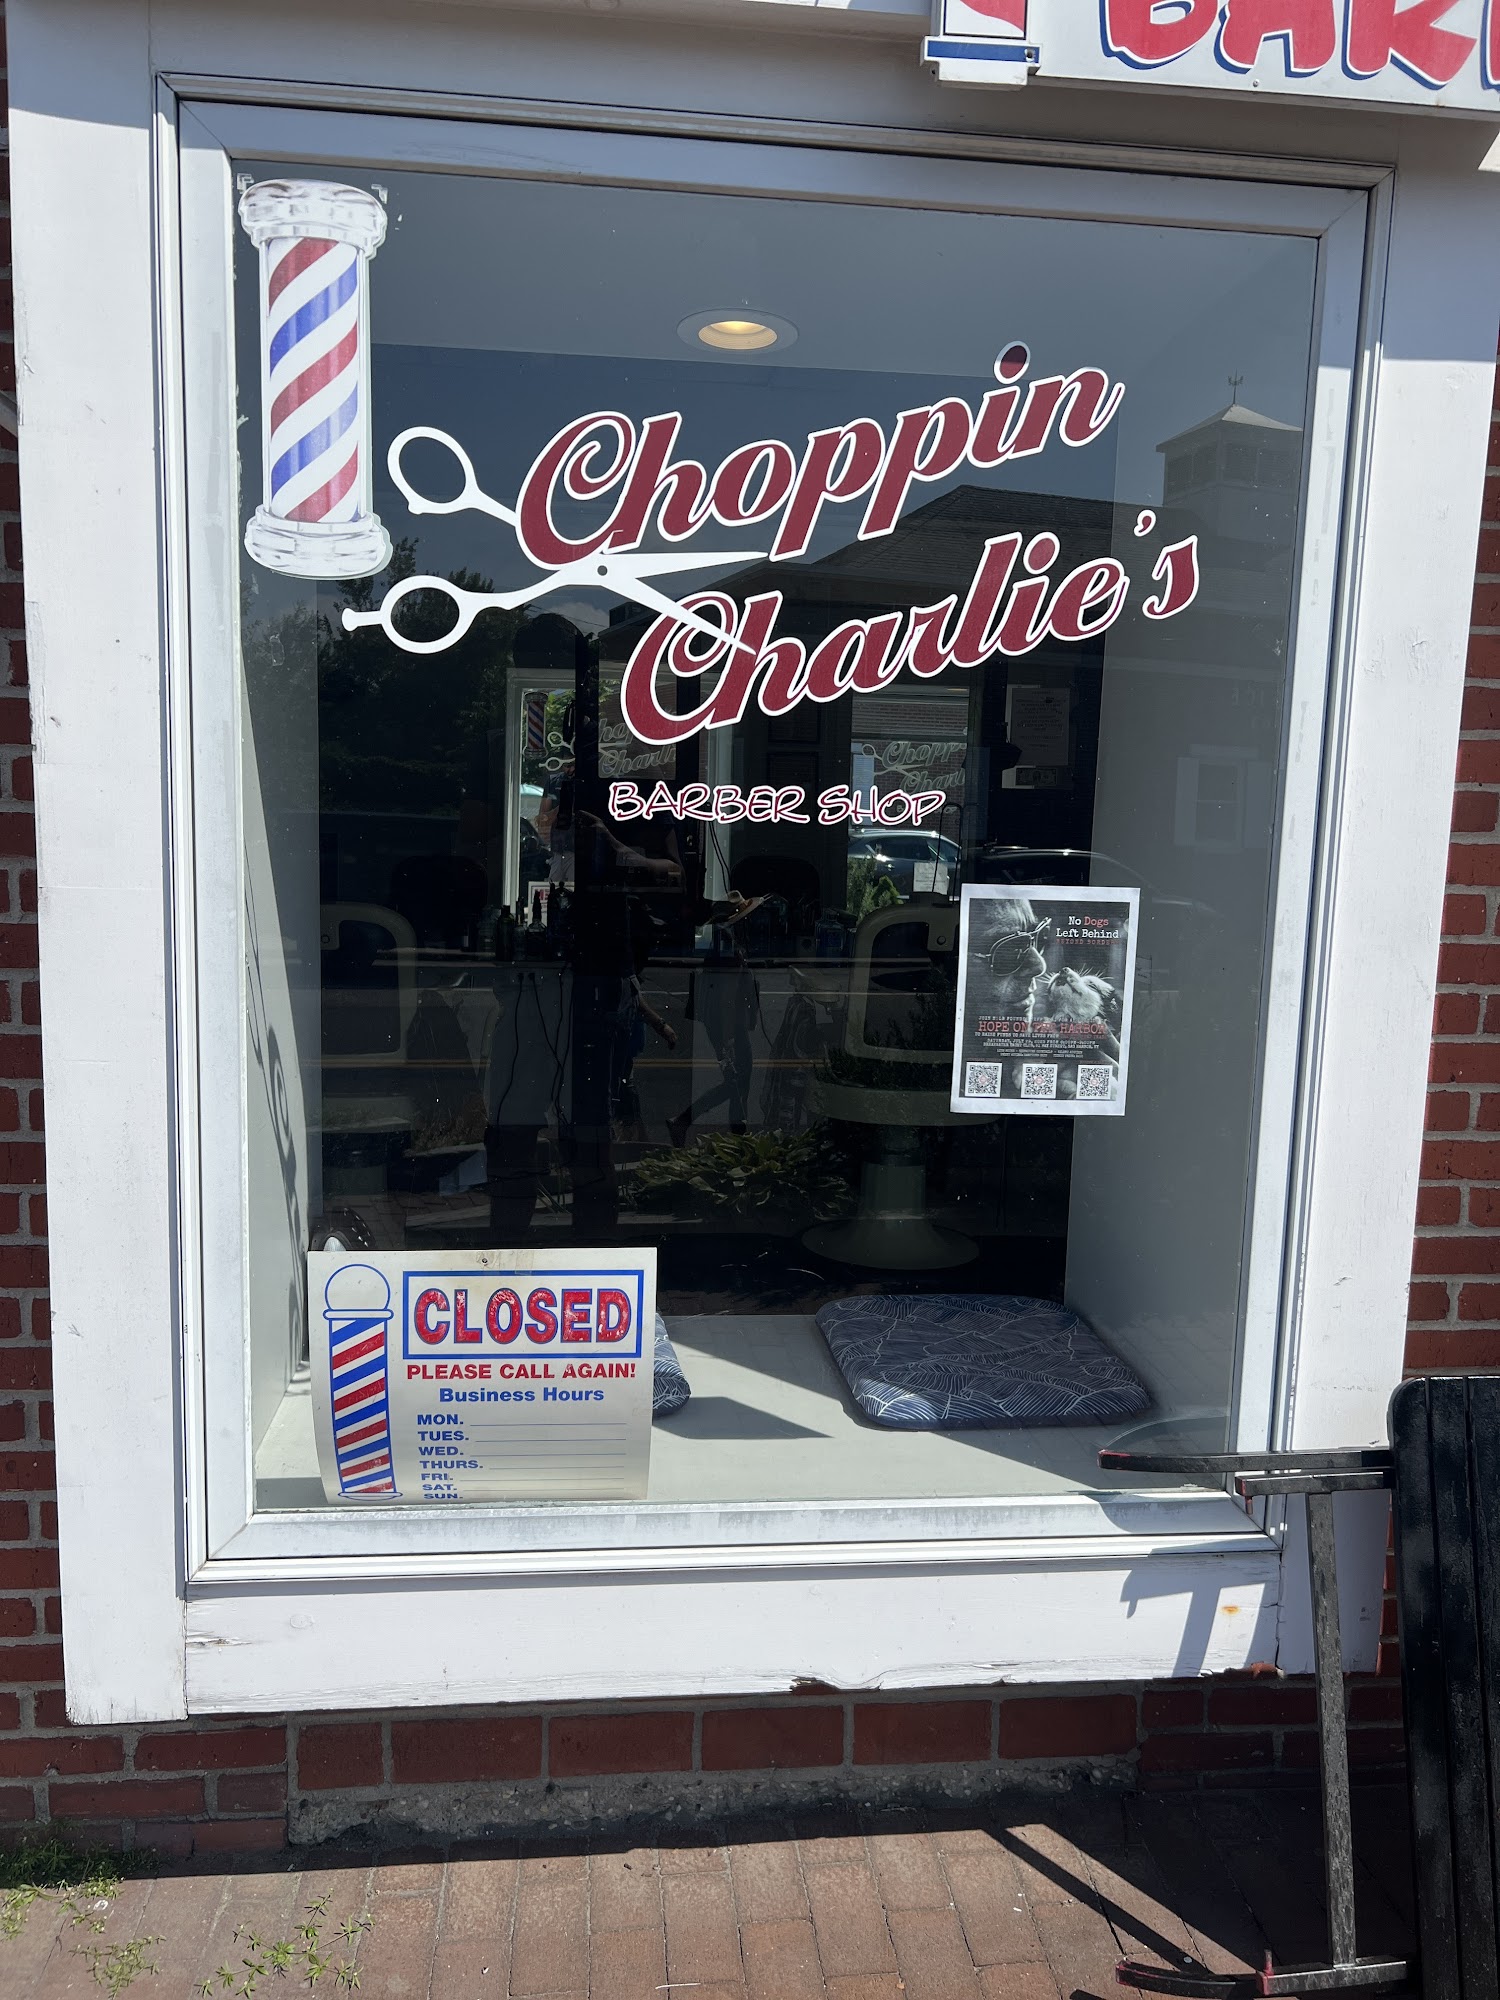 Choppin Charlies Barber Shop 28 Long Island Ave, Sag Harbor New York 11963